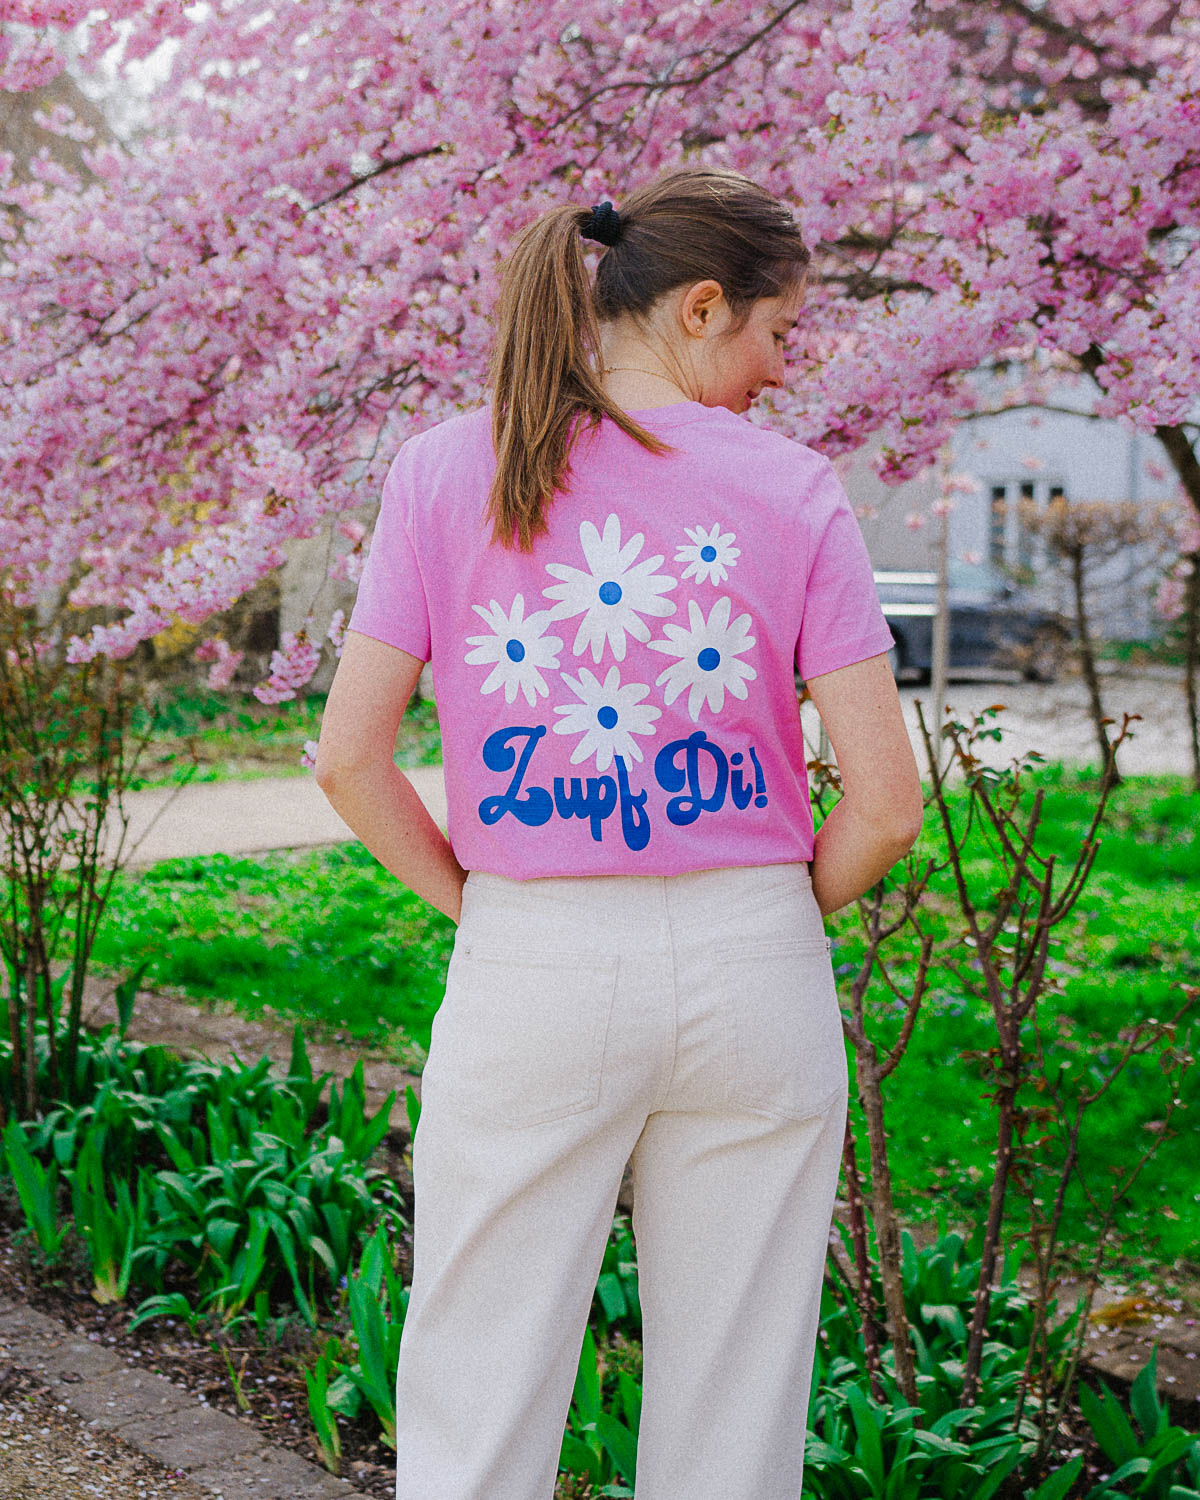 Weibliches Model, die mit dem Rücken zu uns steht,  trägt in einem Park ein pinkes T-Shirt mit einem weißem Blumenmotiv und einer blauen Schrift darunter. 